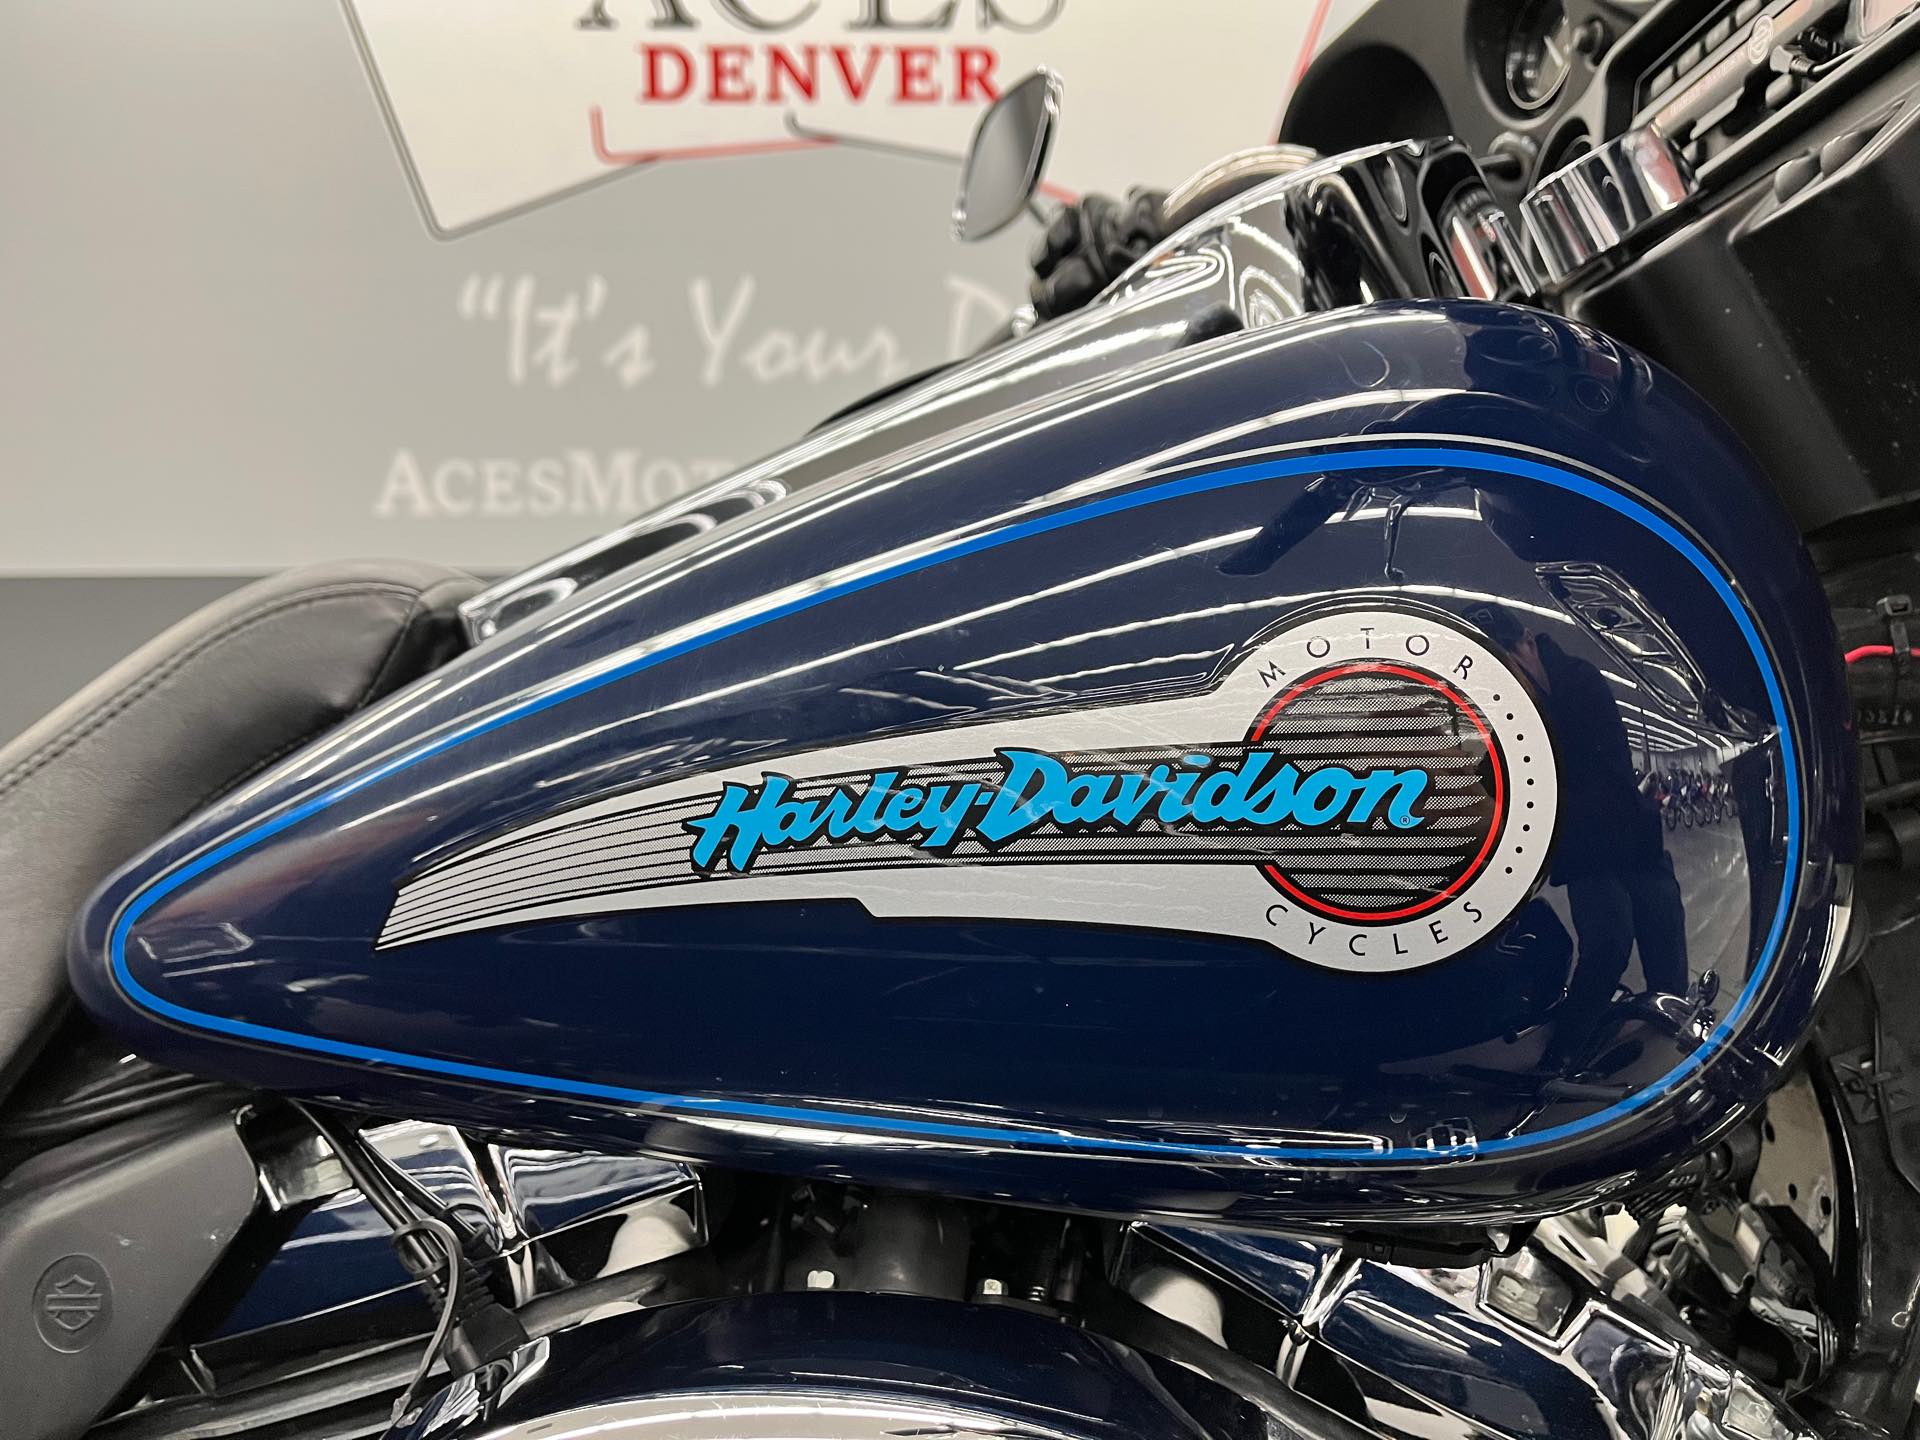 2004 HARLEY DAVIDSON FLHTCI at Aces Motorcycles - Denver